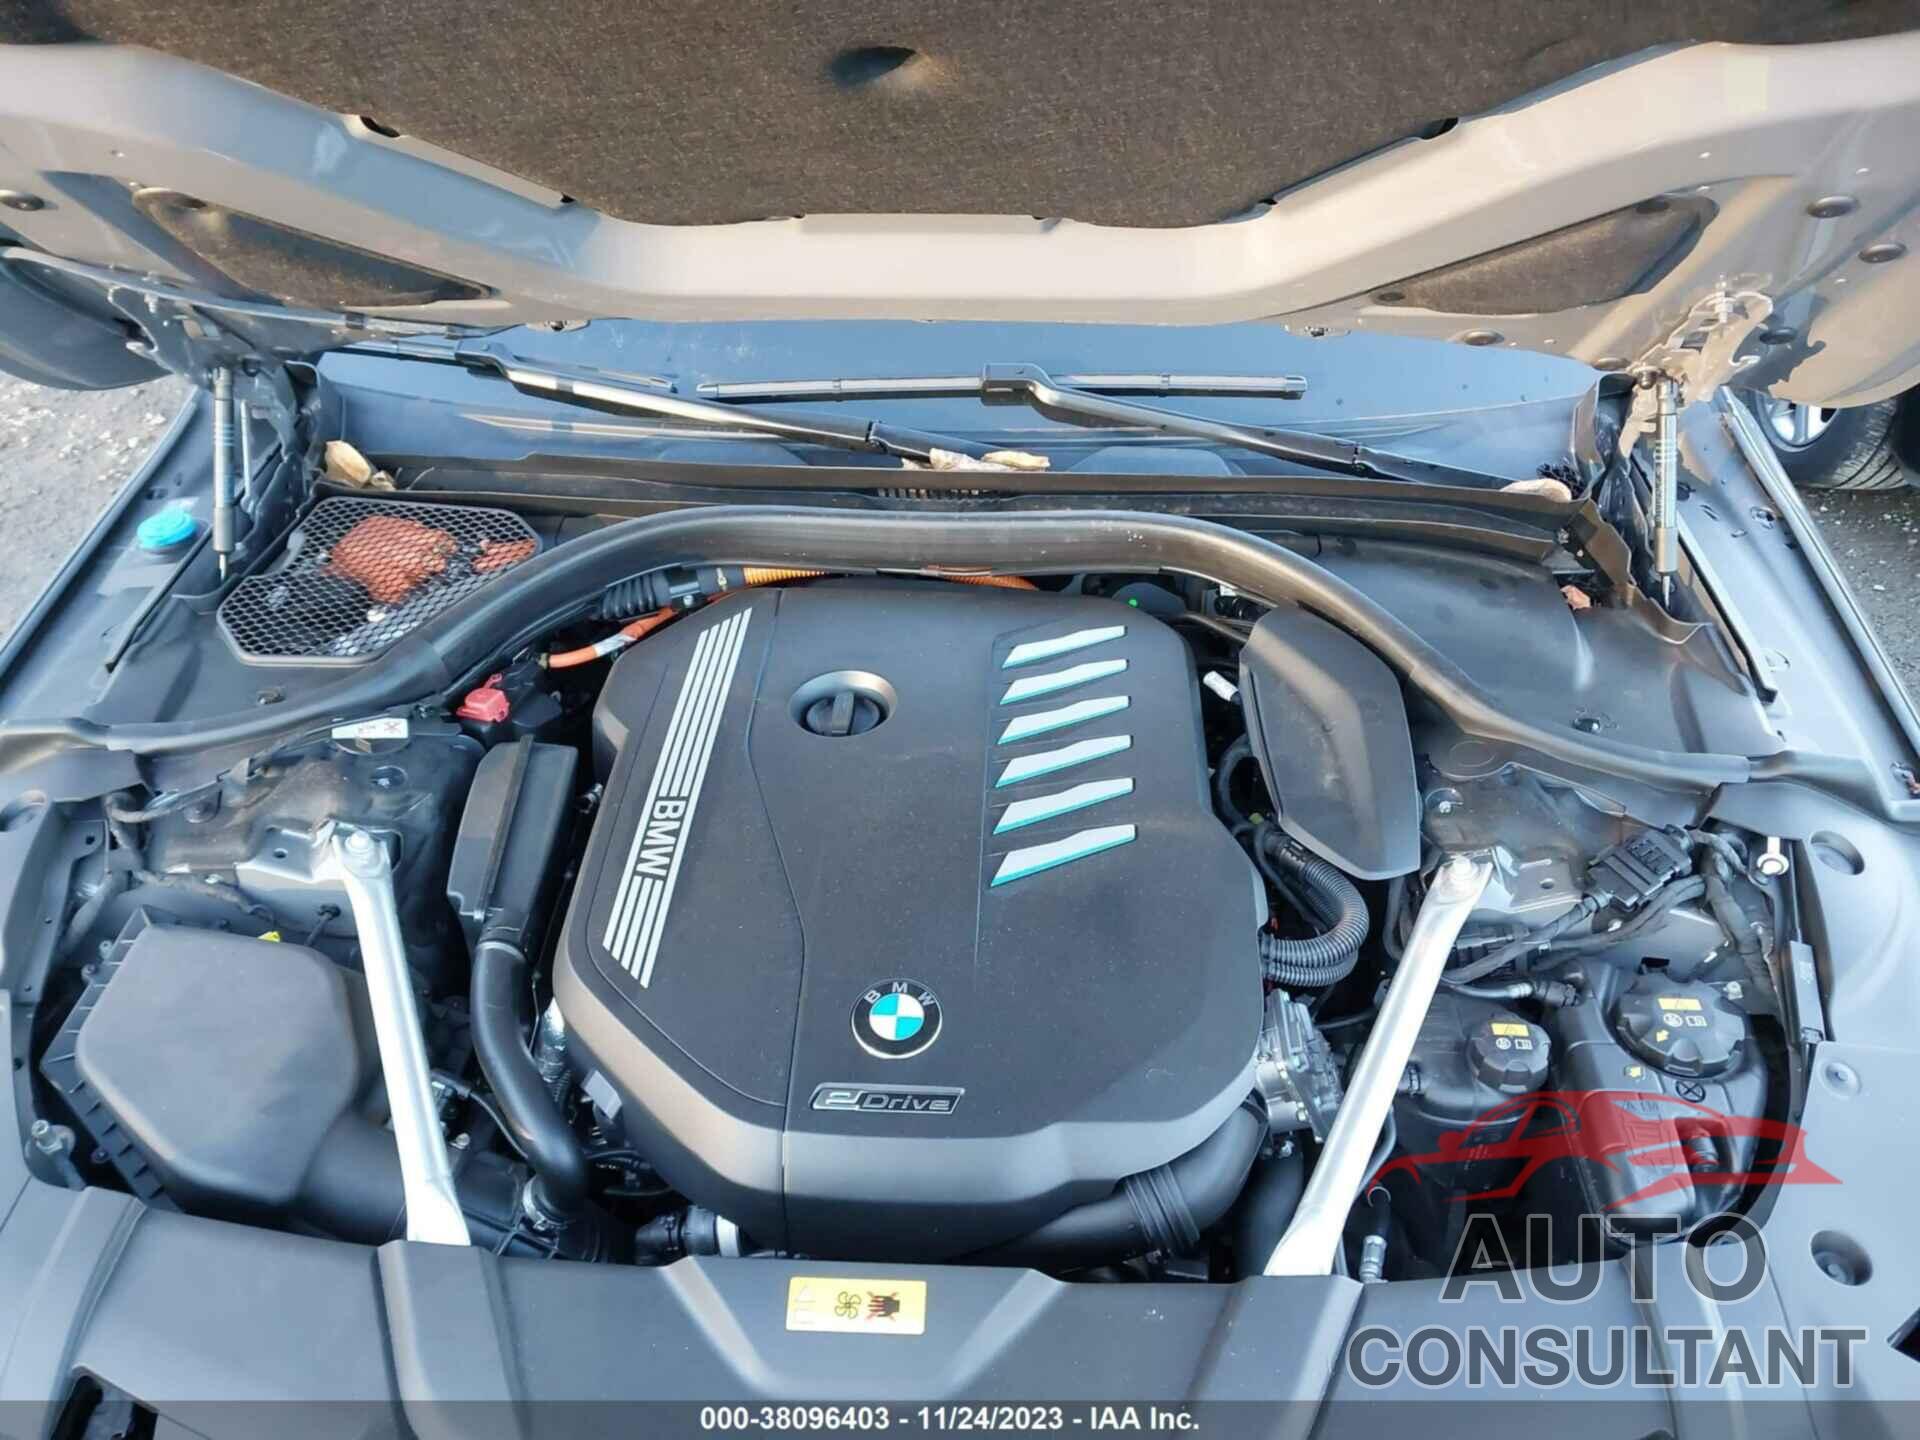 BMW 7 SERIES 2020 - WBA7W4C02LBM70777